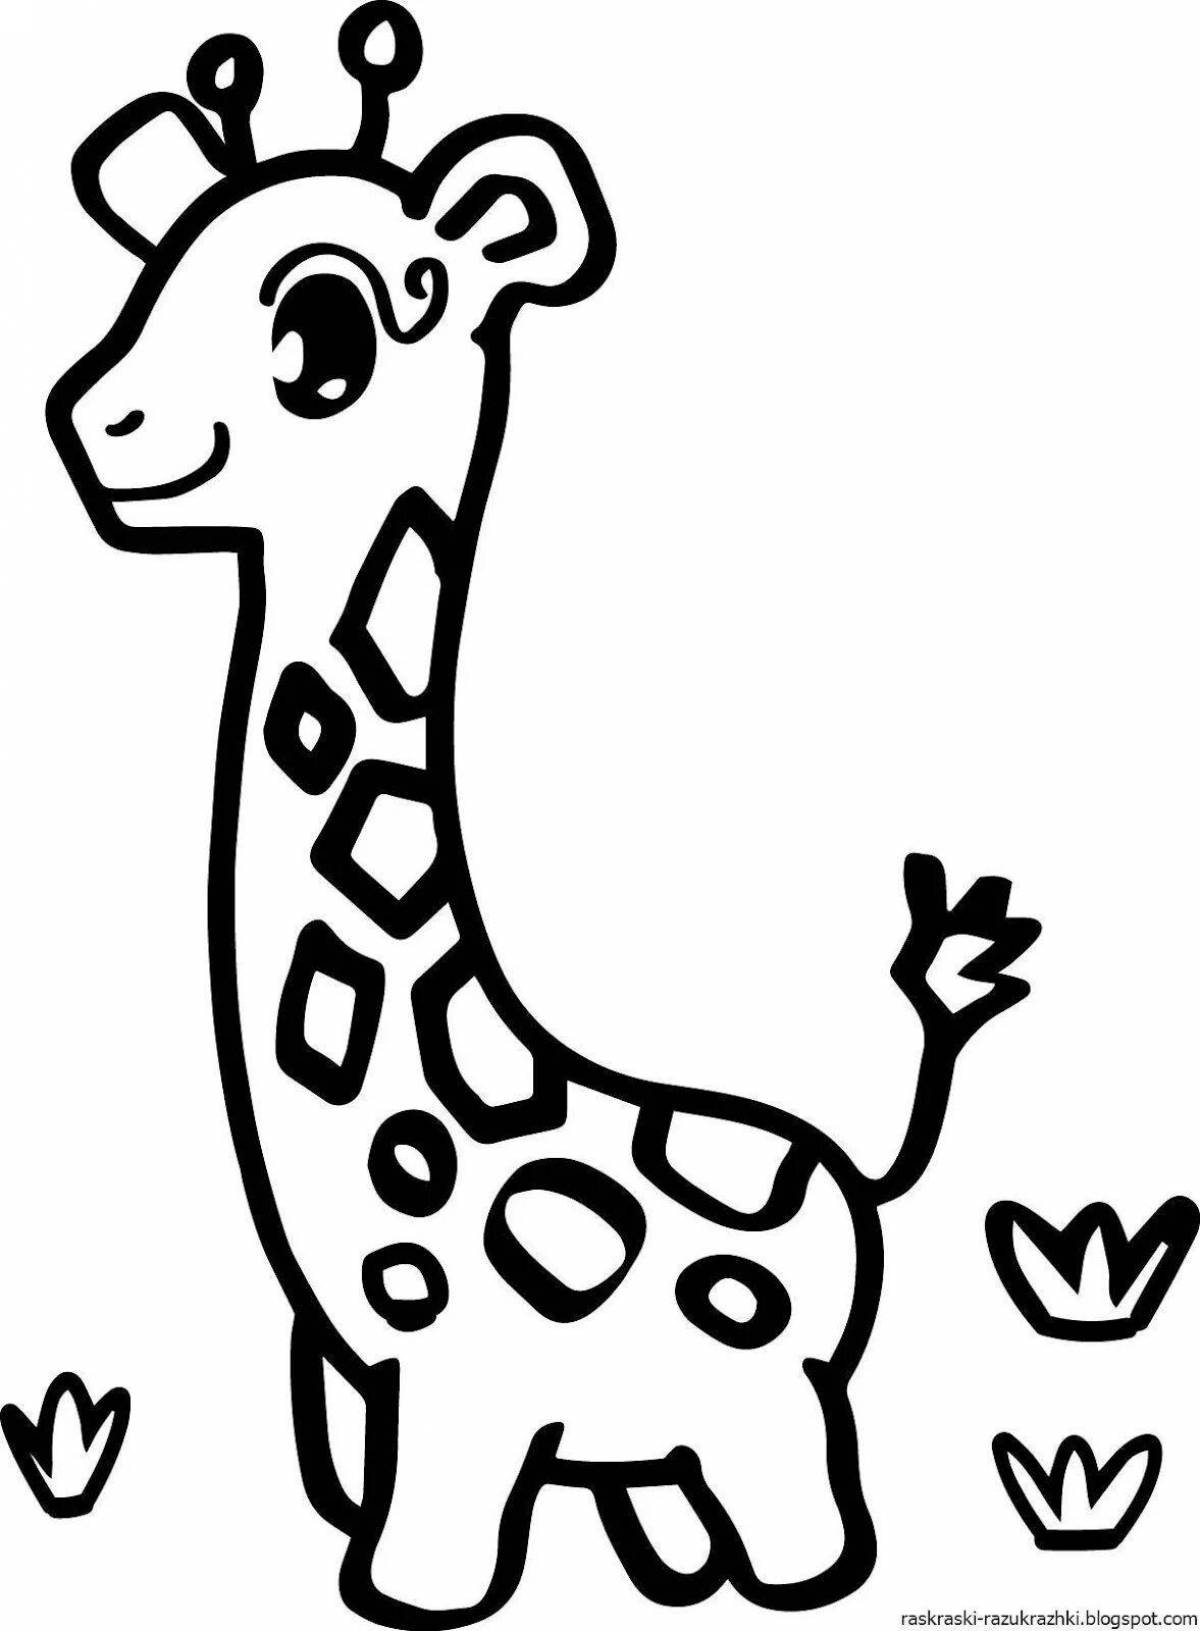 Яркая раскраска жирафа для самых маленьких